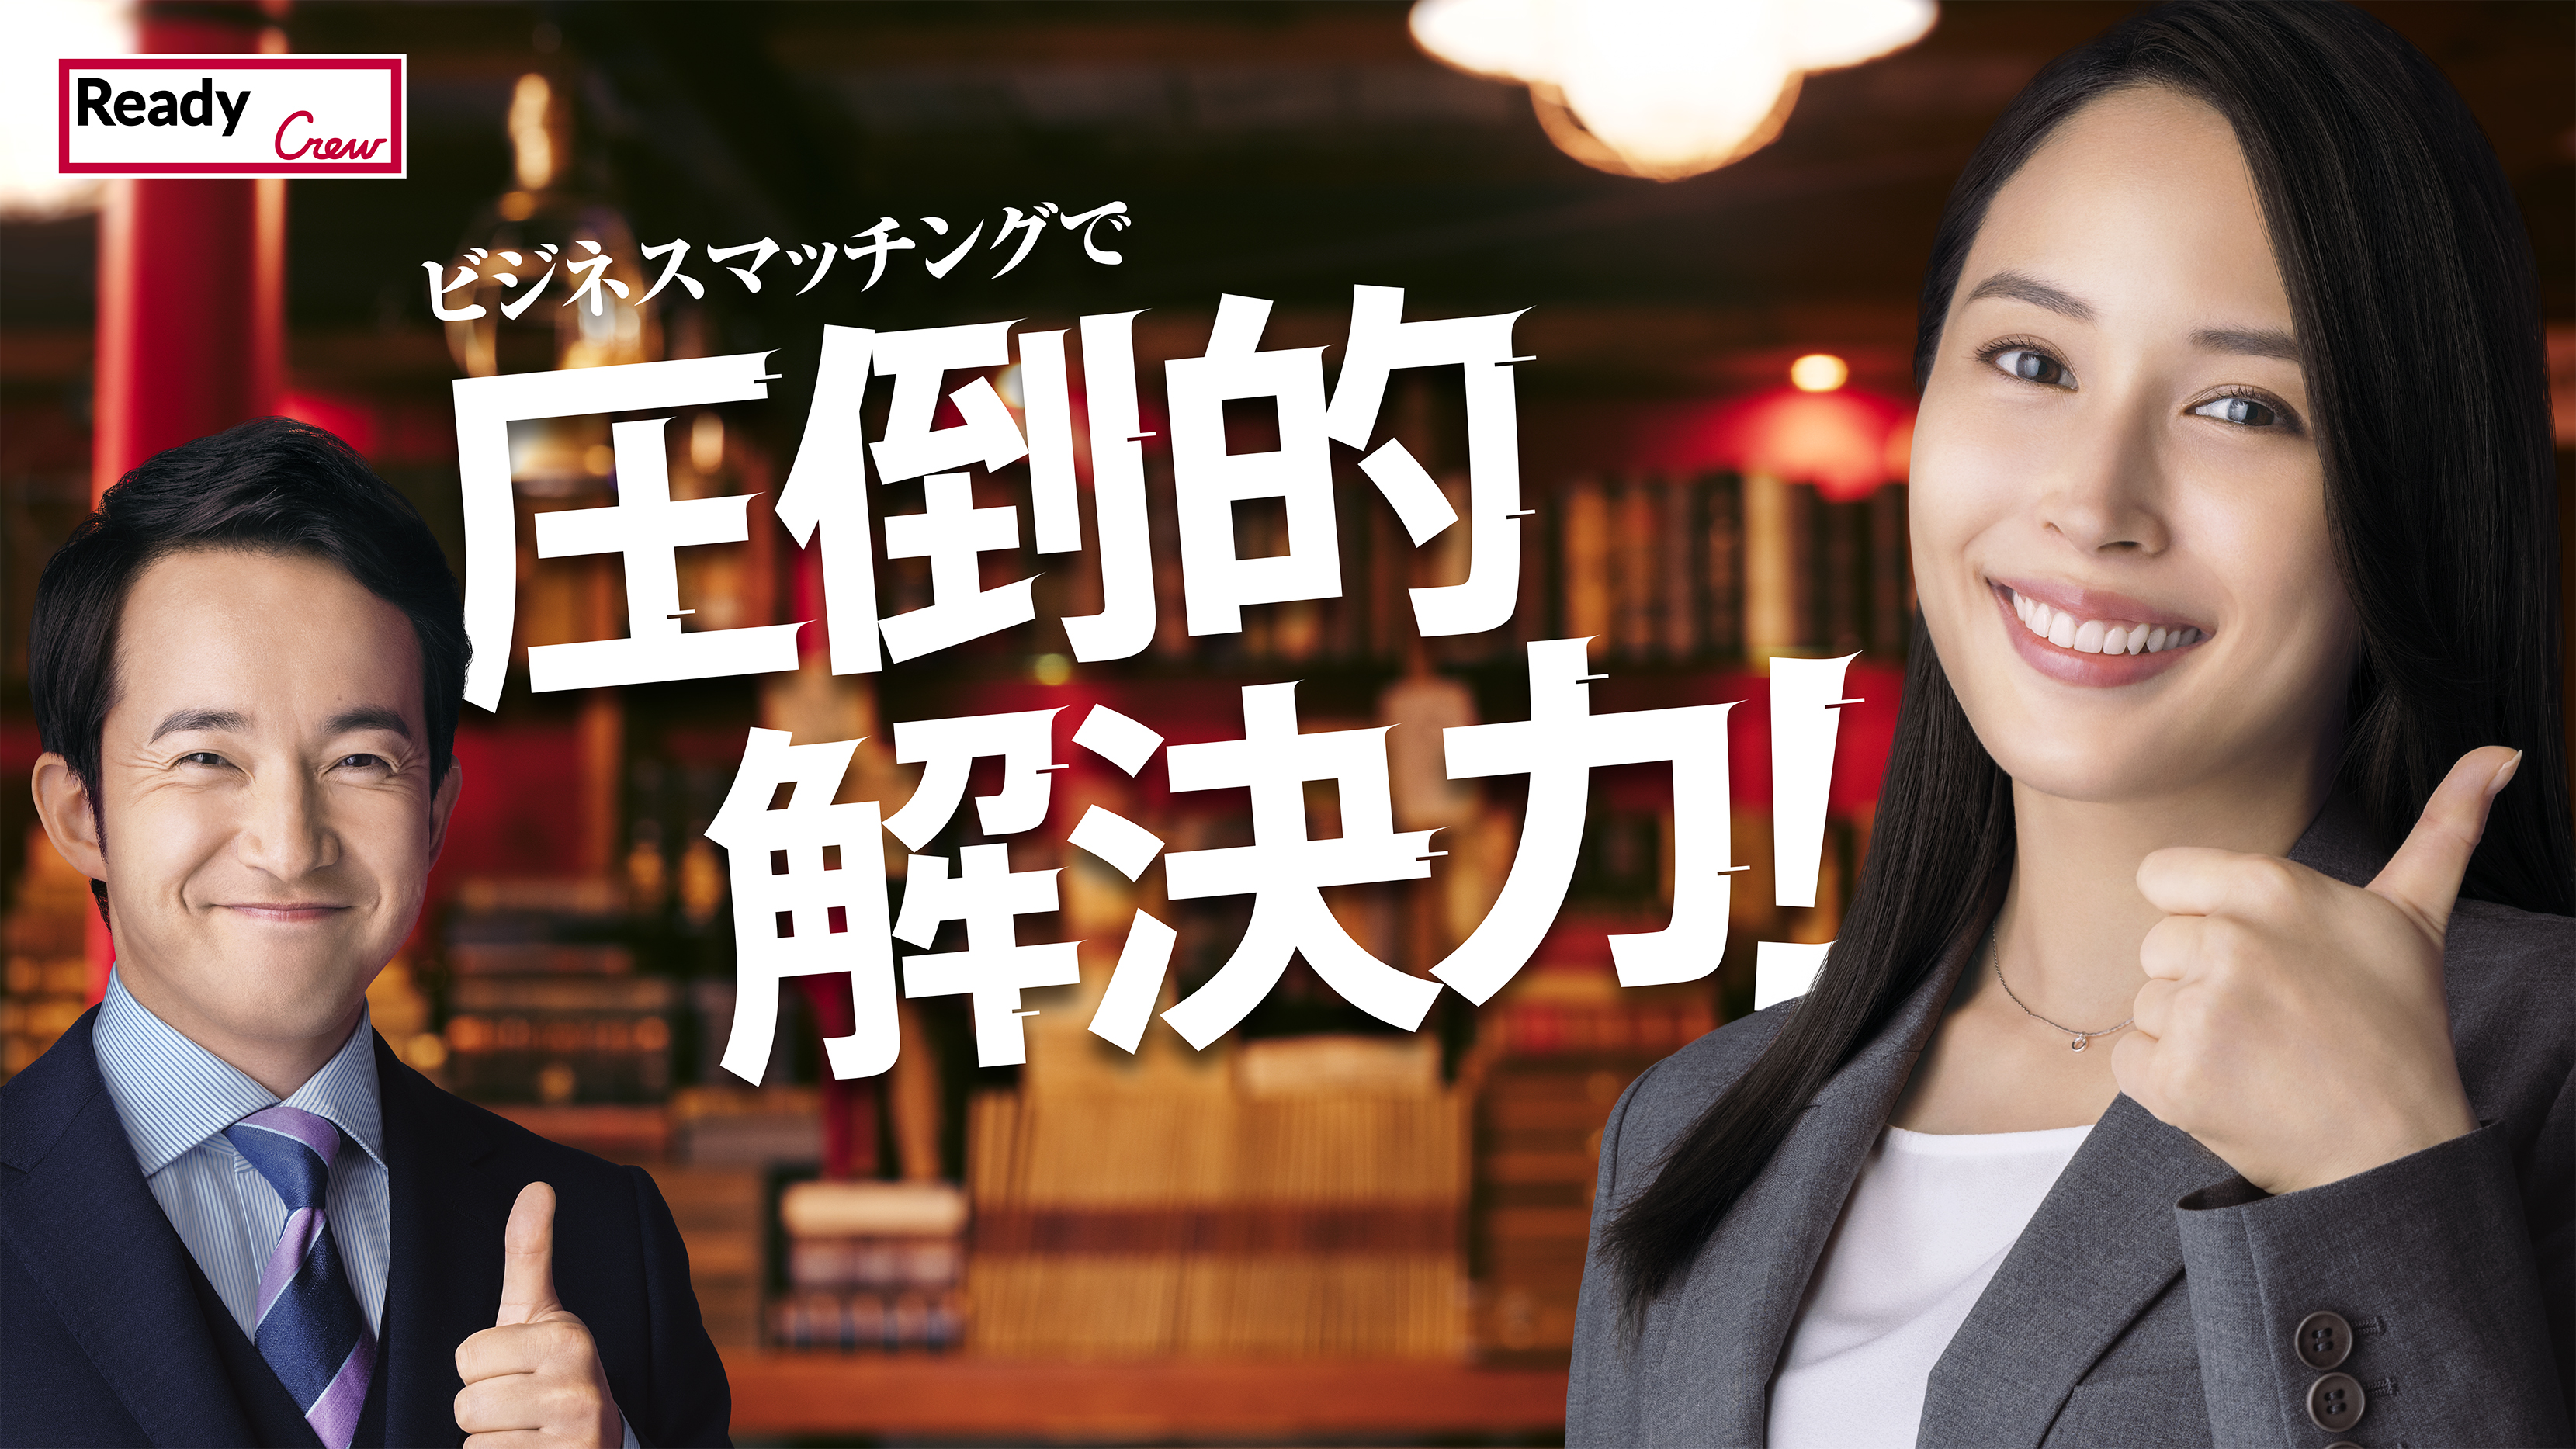 「Ready Crew（レディくる）」公式アンバサダーの広瀬アリスさんと新たに浅利陽介さんを起用した新CM、タクシー内メディア「TOKYO PRIME」にて放映スタート！